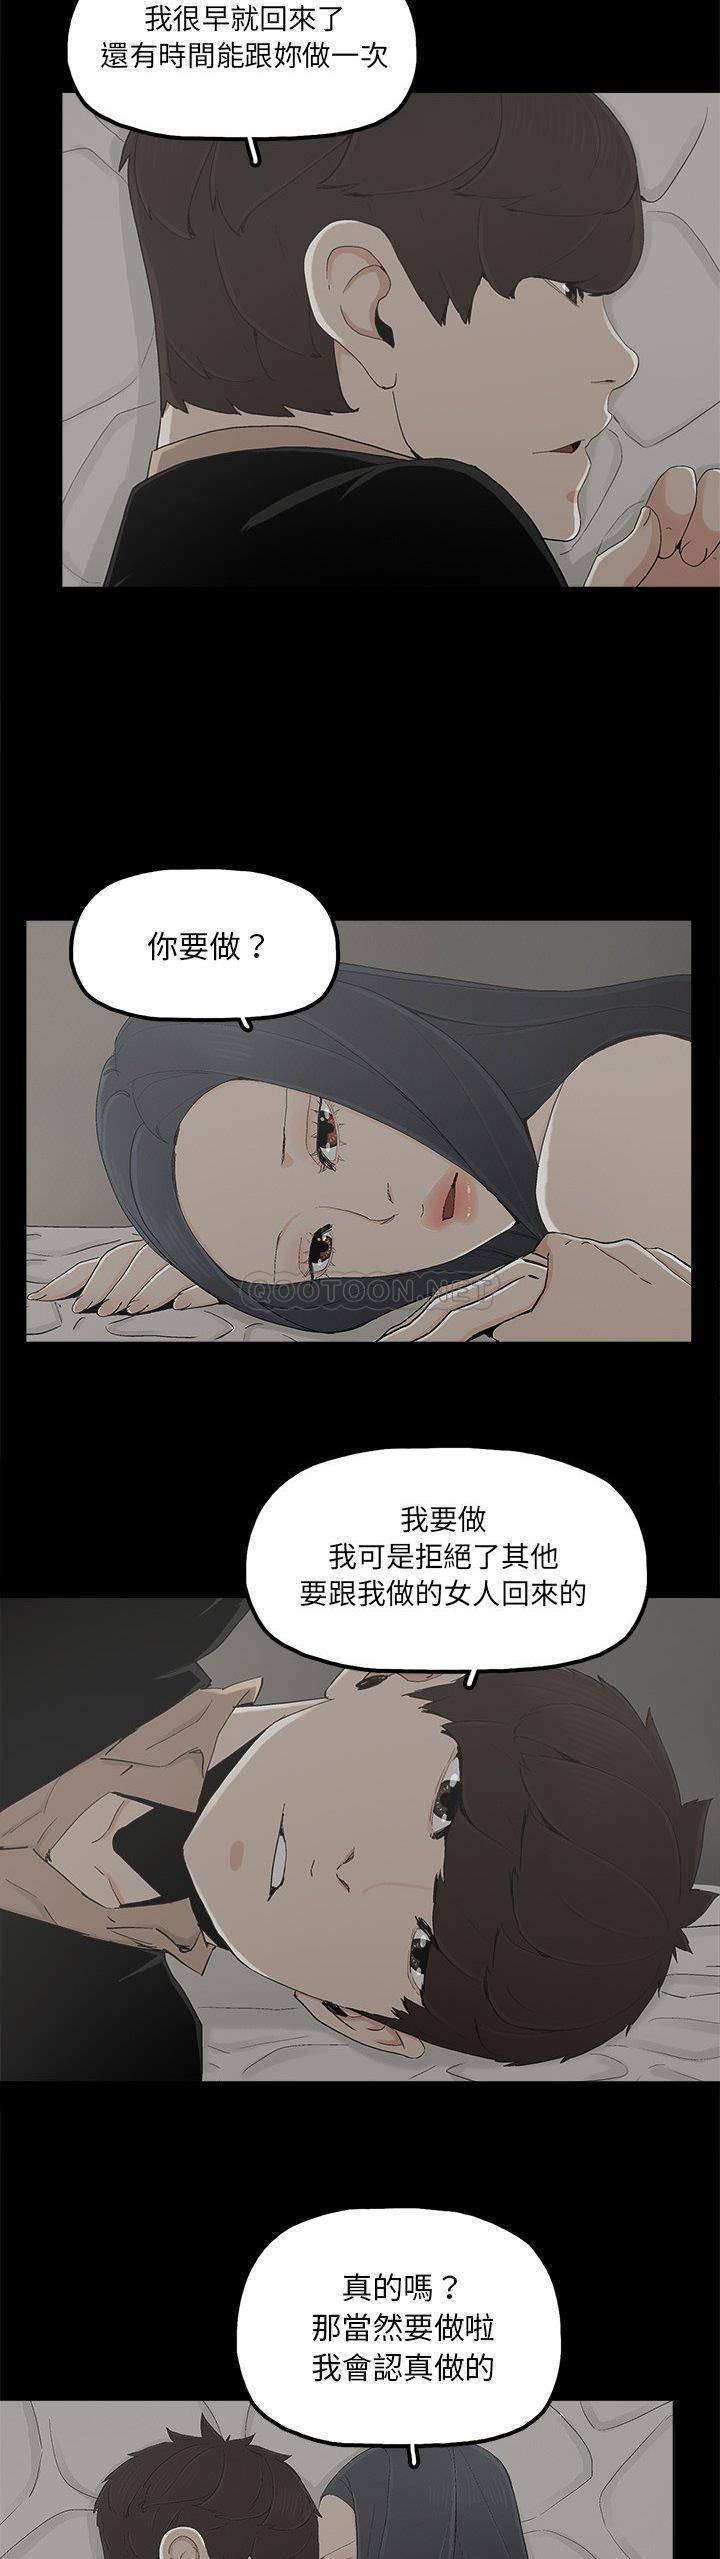 韩国污漫画 幸福 第26话 19